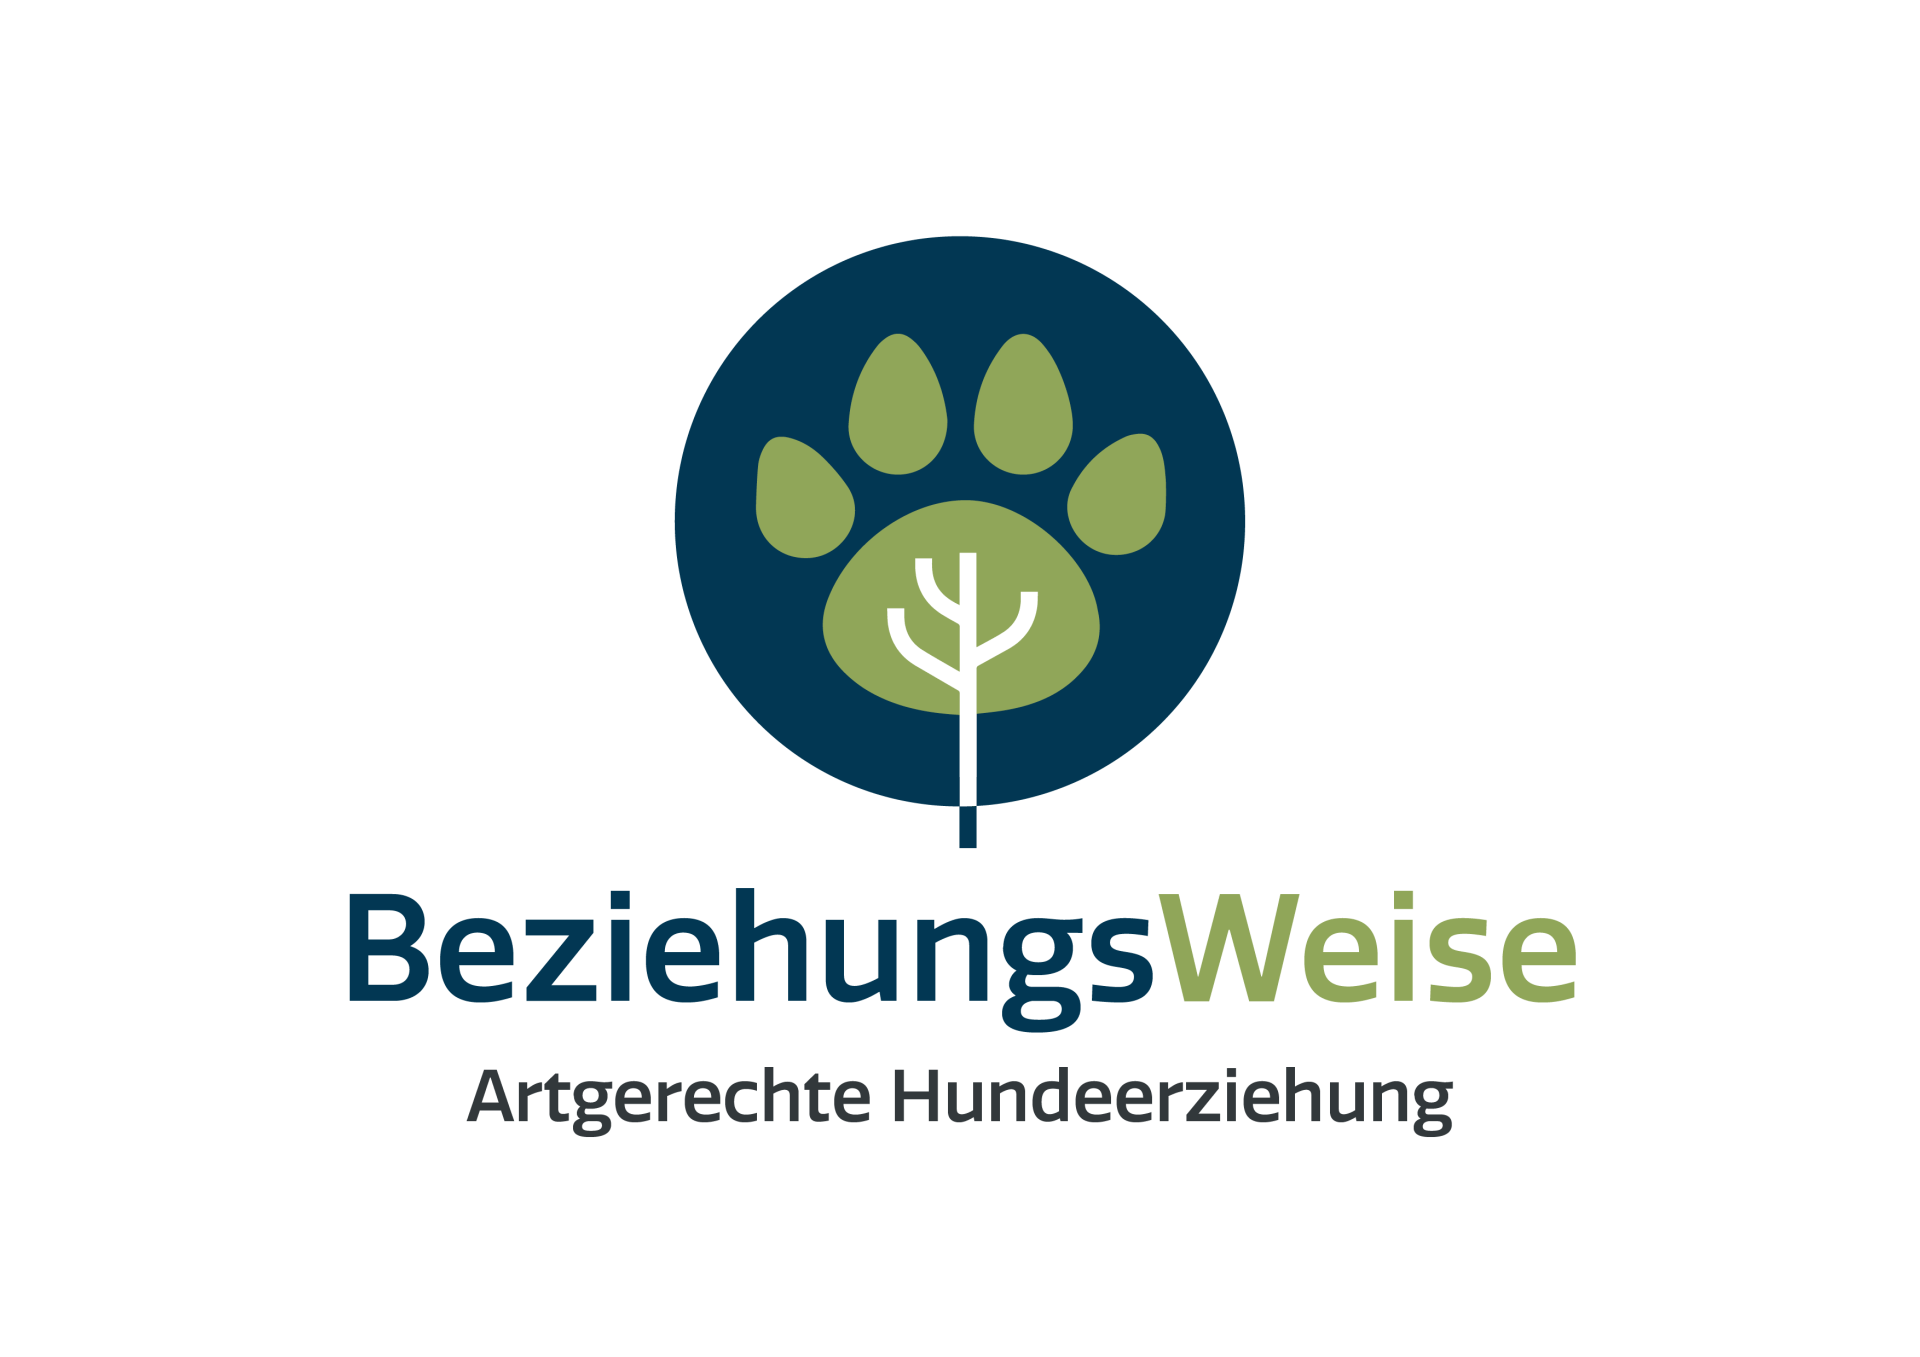 BeziehungsWeise - Hundeschule für artgerechte Hundeerziehung in Kiel und Umgebung